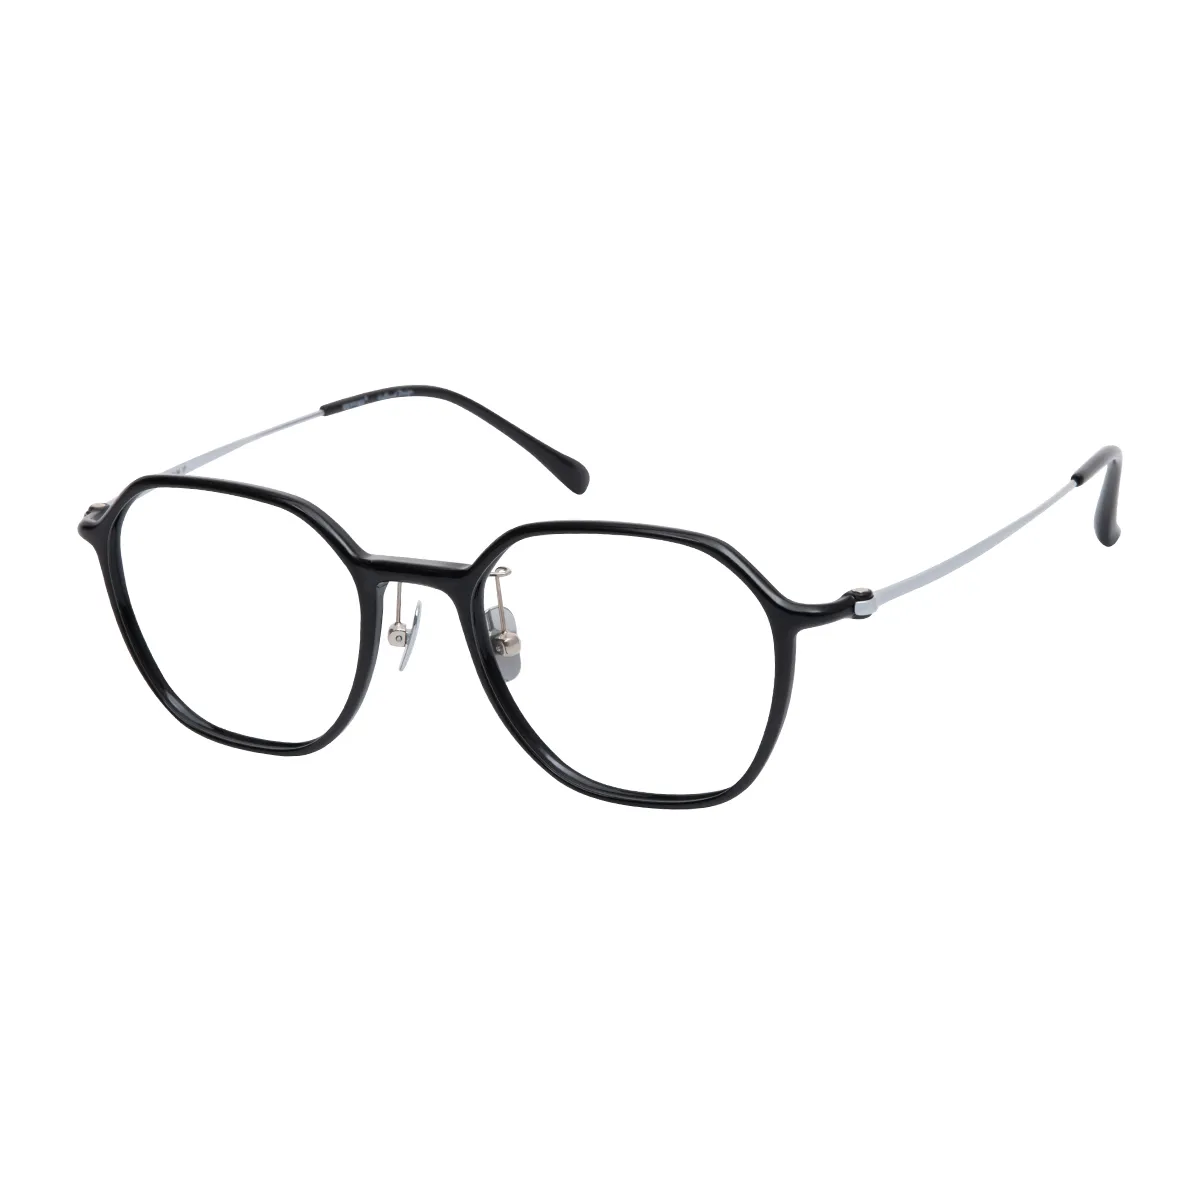 Mlair - Square Black Glasses for Men & Women